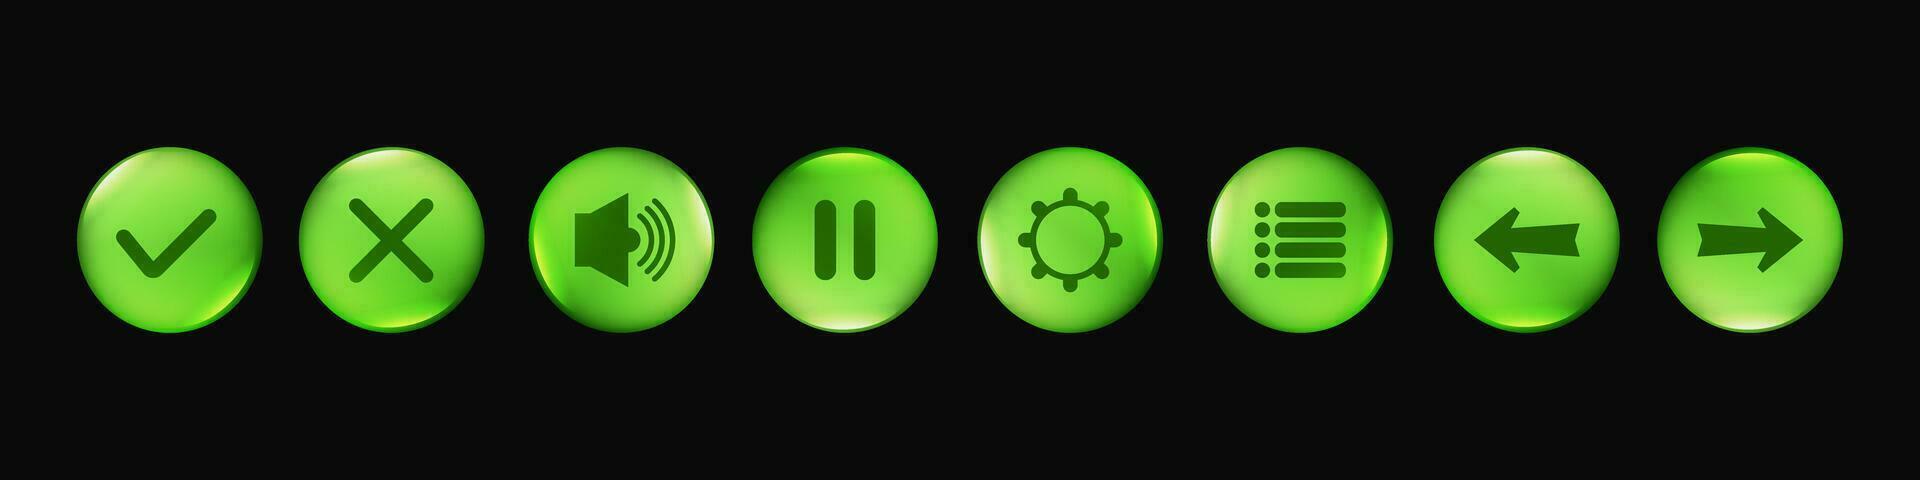 verde lustroso botón conjunto ui juego elemento ilustración vector